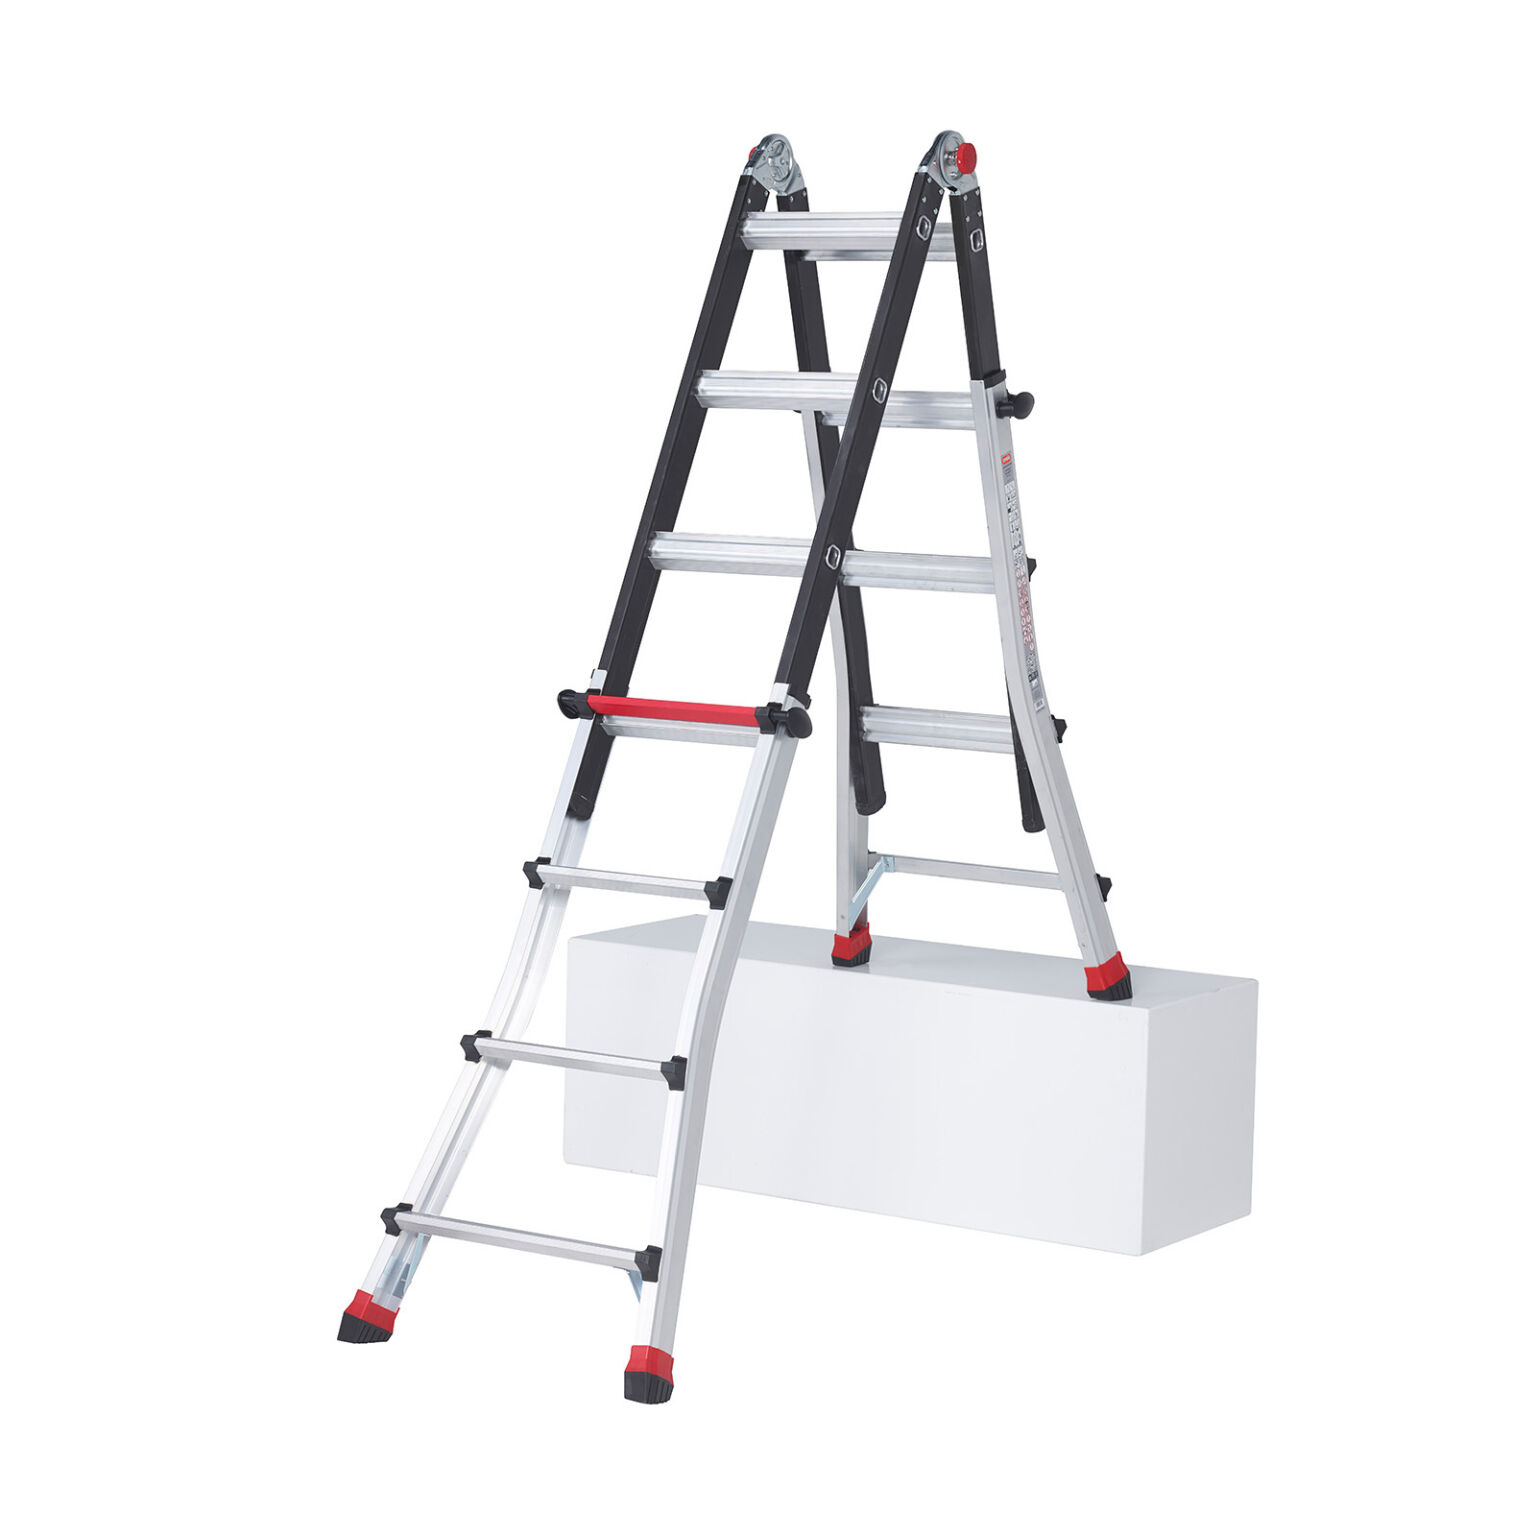 Piket dat is alles inhoud Ladders trap altrex vouwladder 4x4 treden Breedte (mm): 590